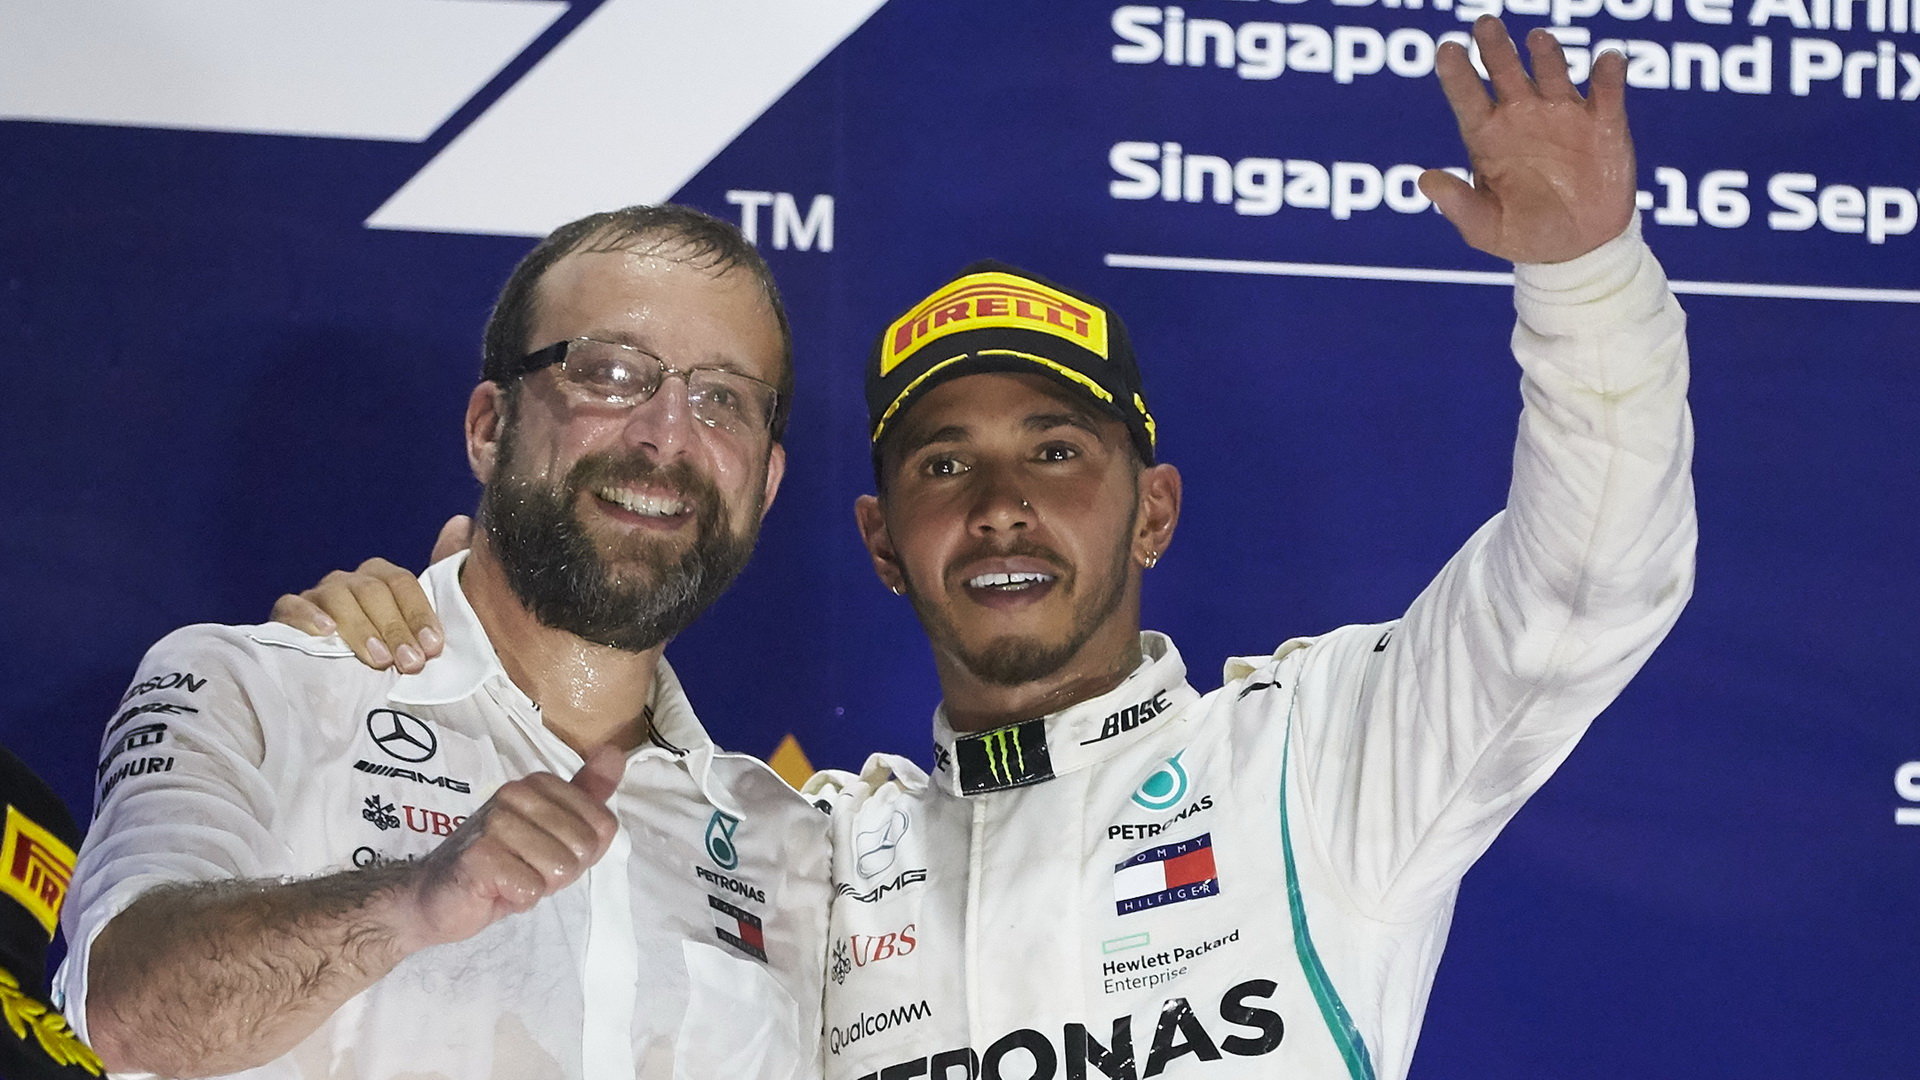 Lewis Hamilton na pódiu po závodě v Singapuru